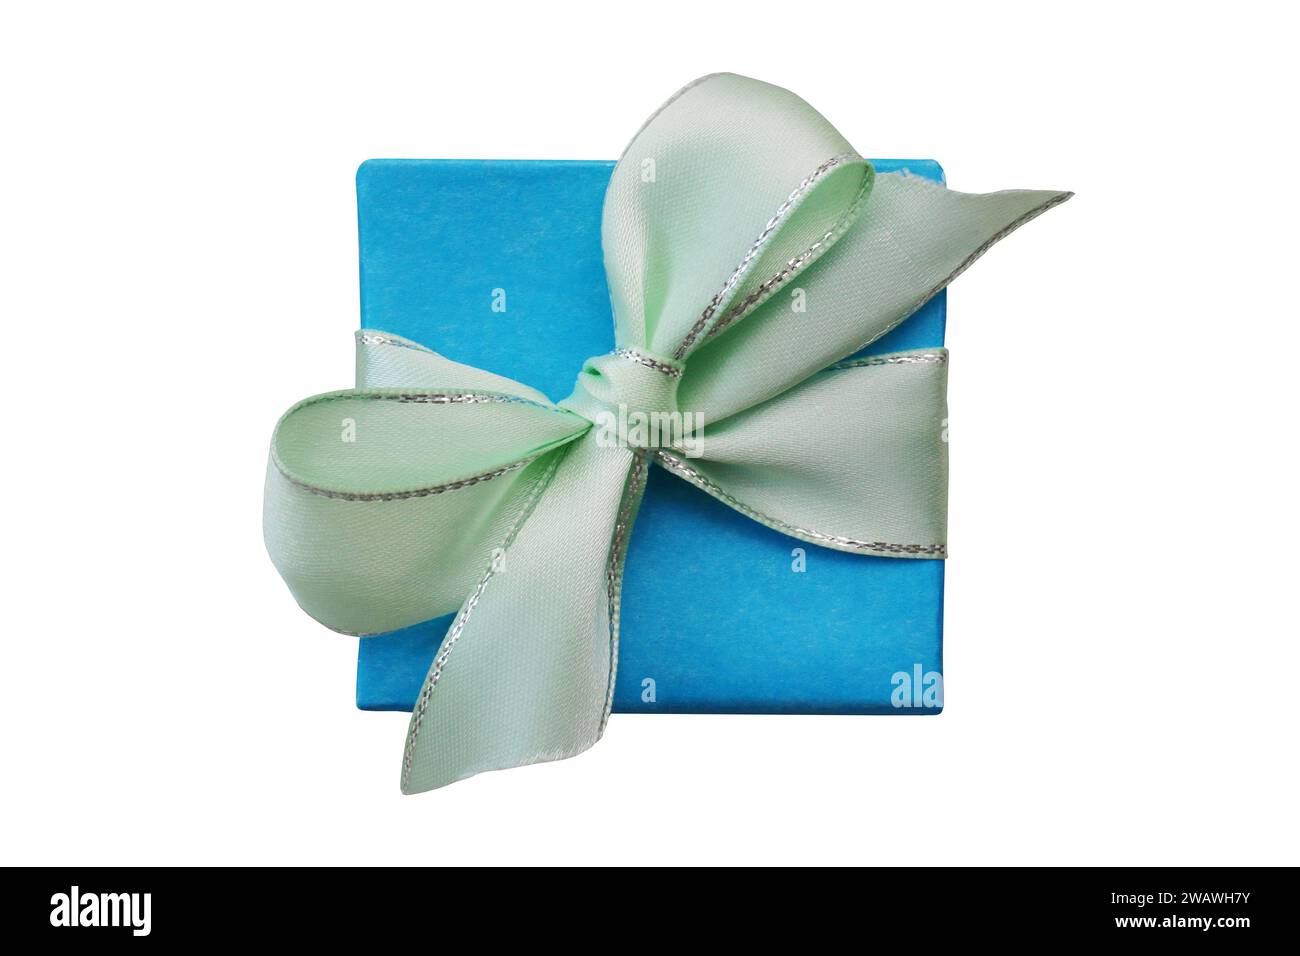 Boîte cadeau bleue avec satin, ruban vert pâle sur un fond blanc isolé. Concept de Noël, vacances et célébrations. Copier l'espace pour le texte. Banque D'Images